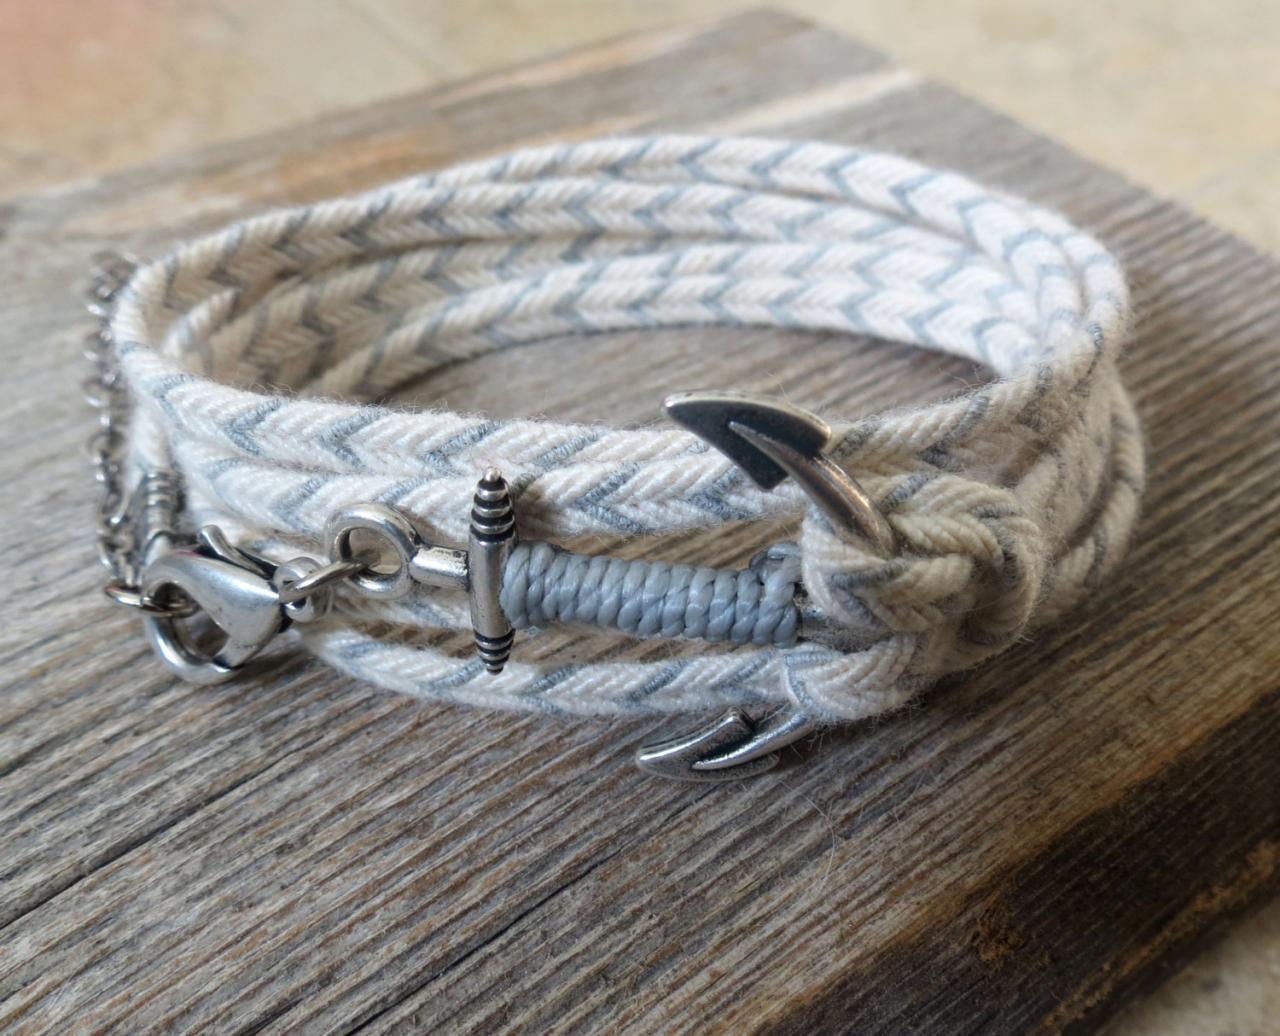 Men's Bracelet - Men's Anchor Bracelet - Men's Nautical Bracelet - Men's Vegan Bracelet - Men's